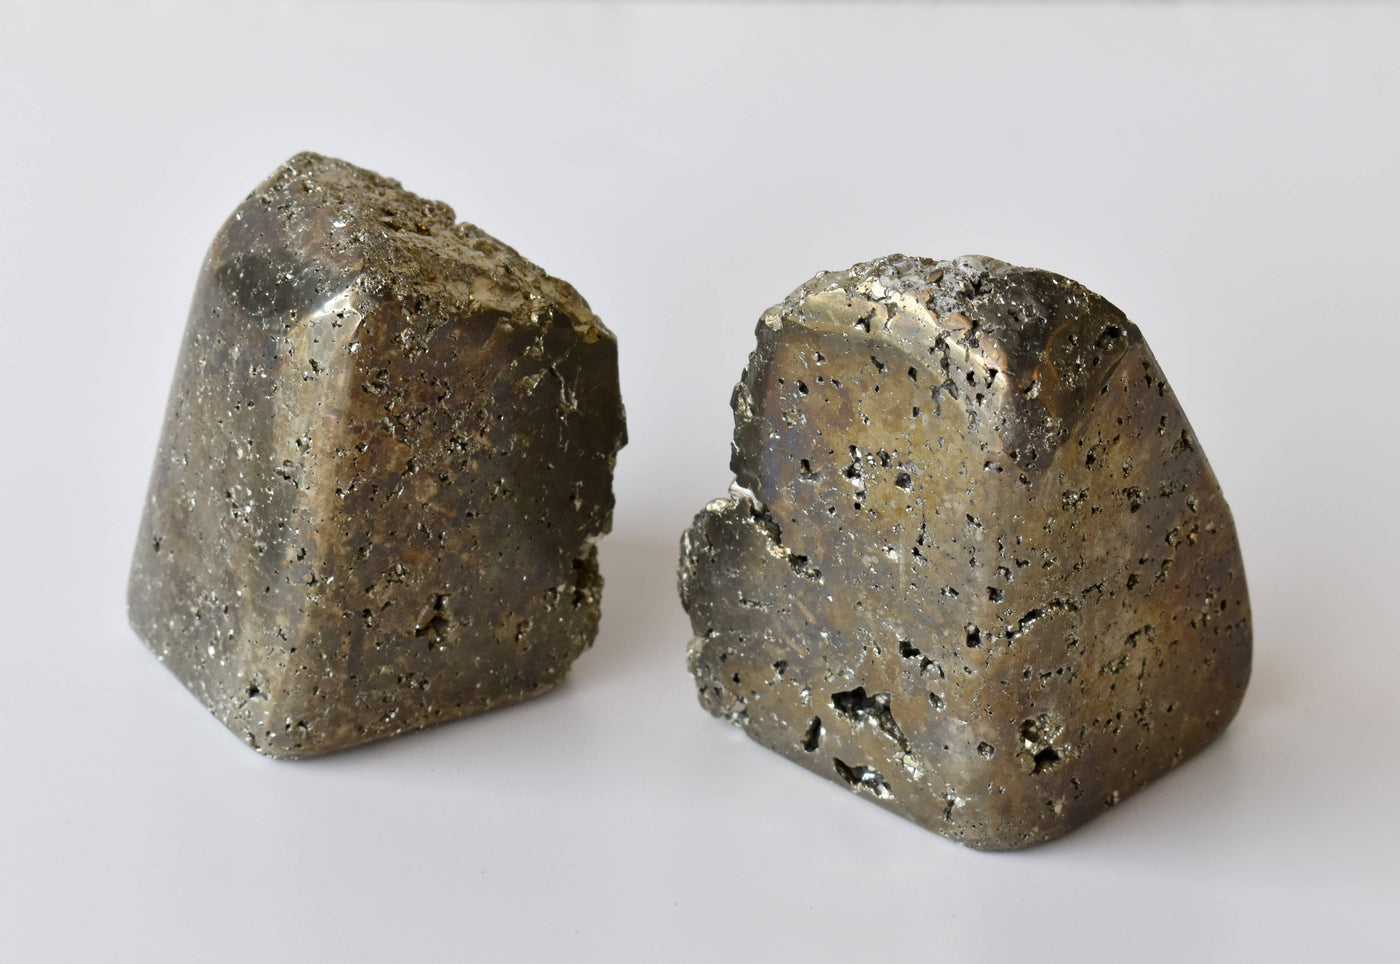 Forme libre de pyrite druzy polie, forme libre de pyrite druzy de base coupée, cristaux de pyrite druzy.